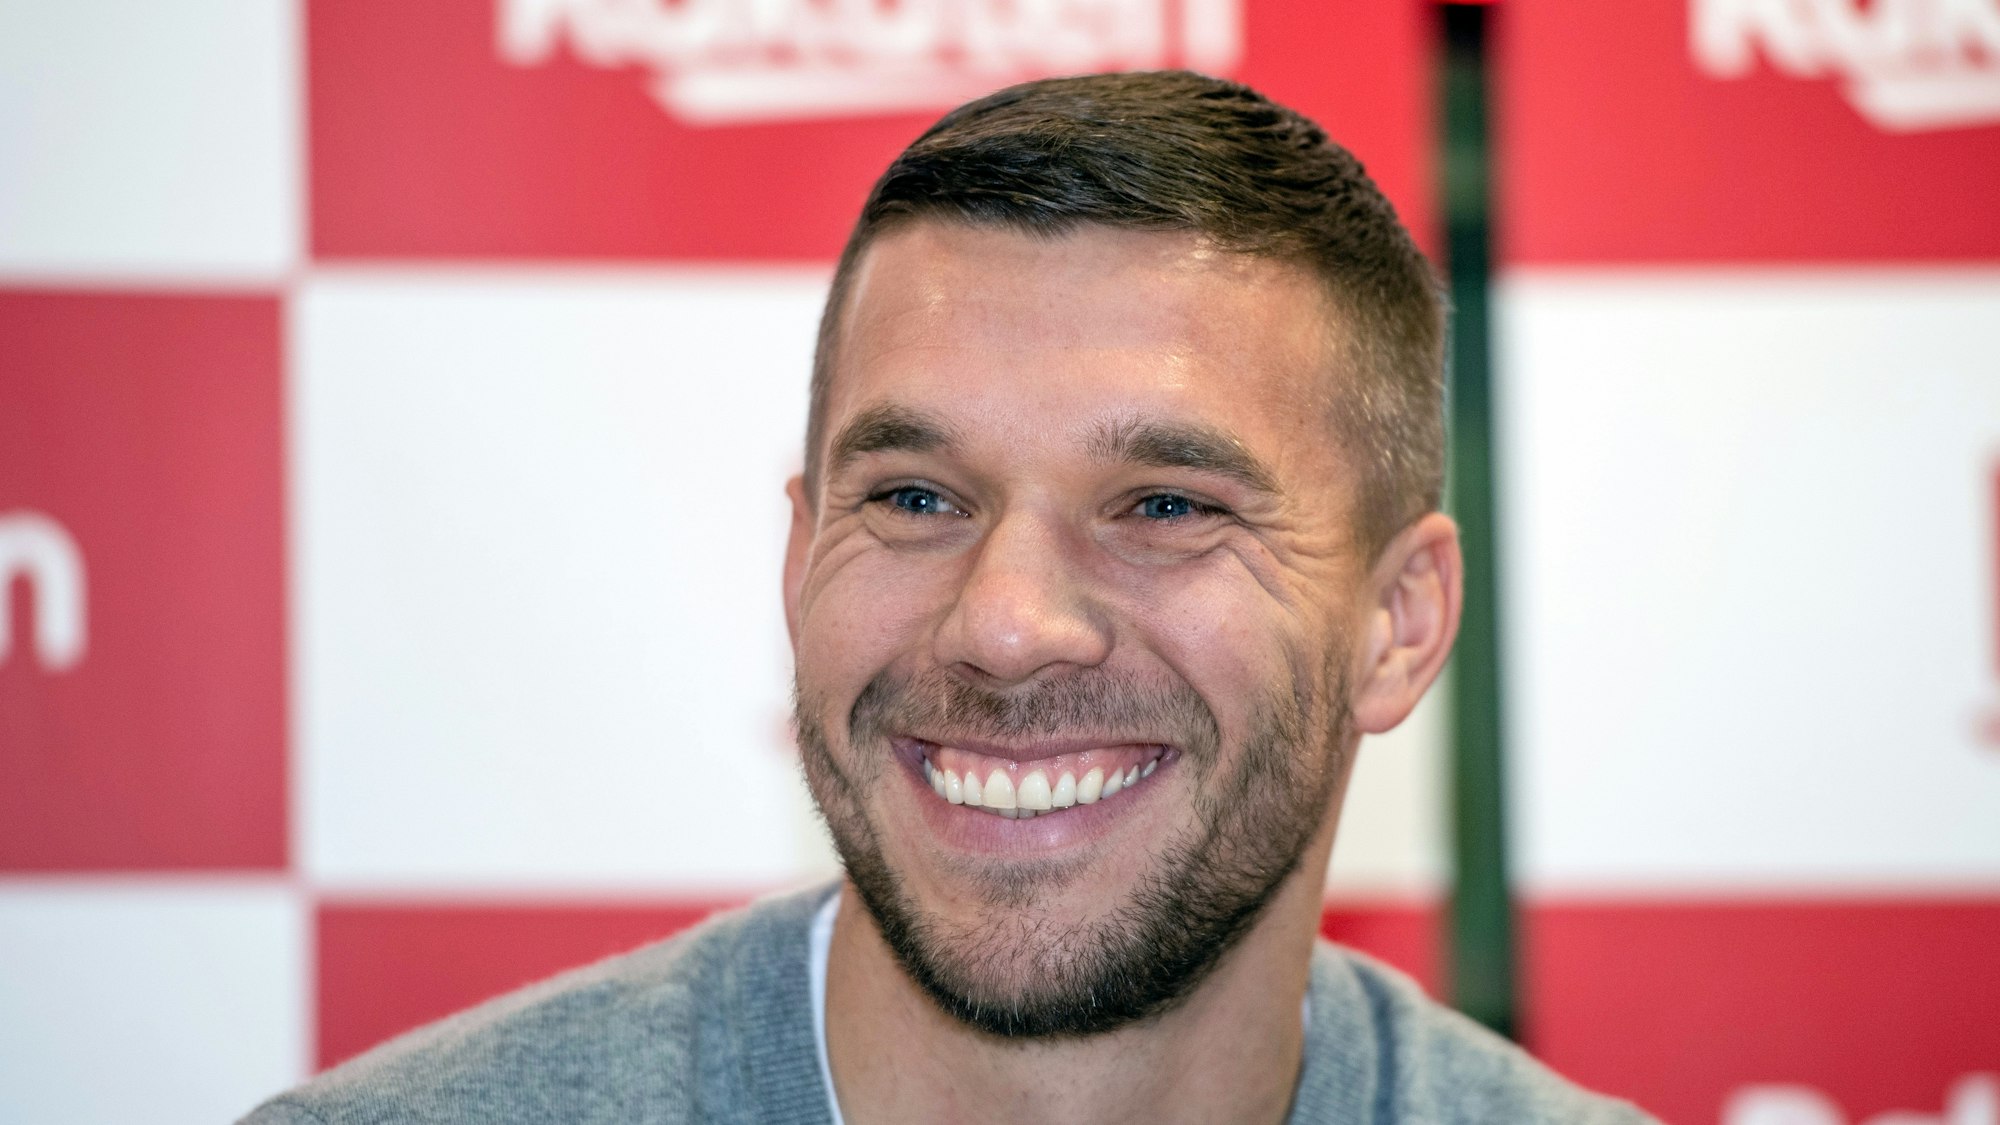 Lukas Podolski ist der neue Juror beim Supertalent auf RTL.